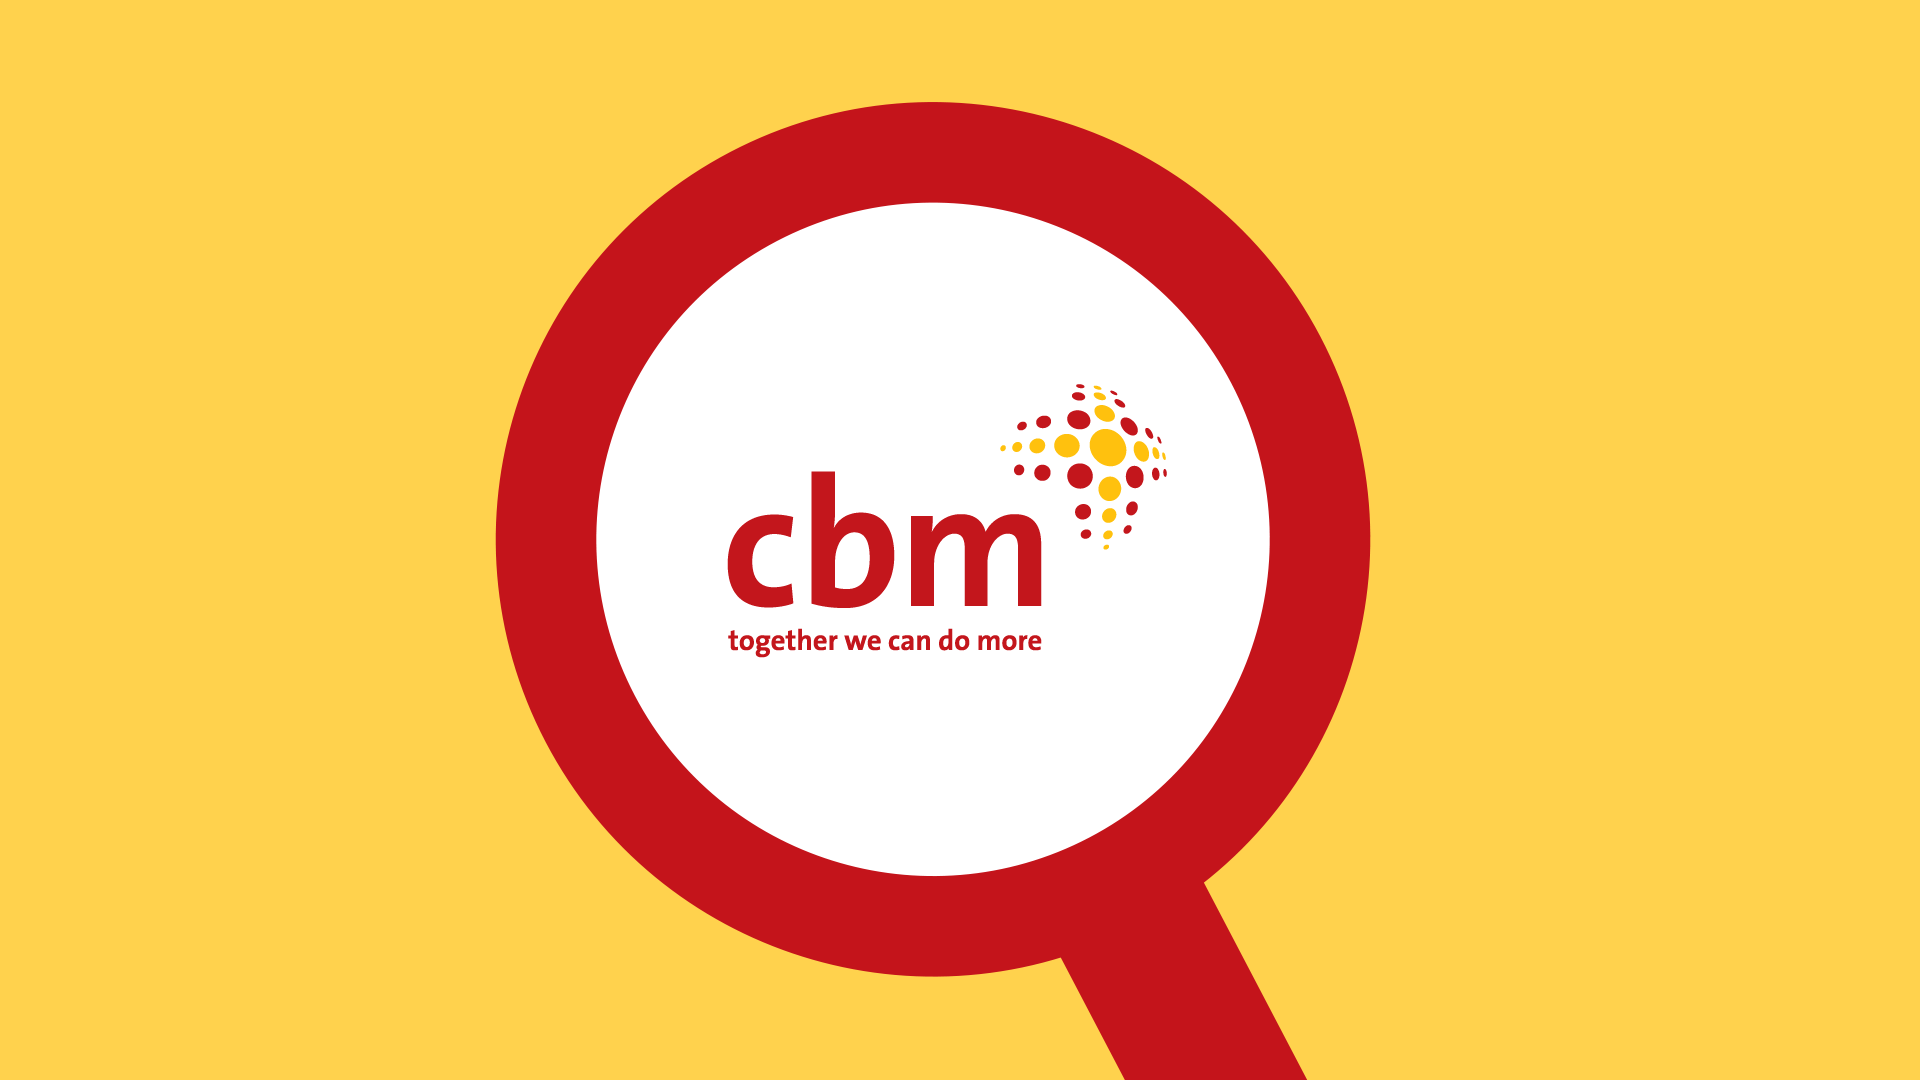 CBM logo inside a magnifier glass